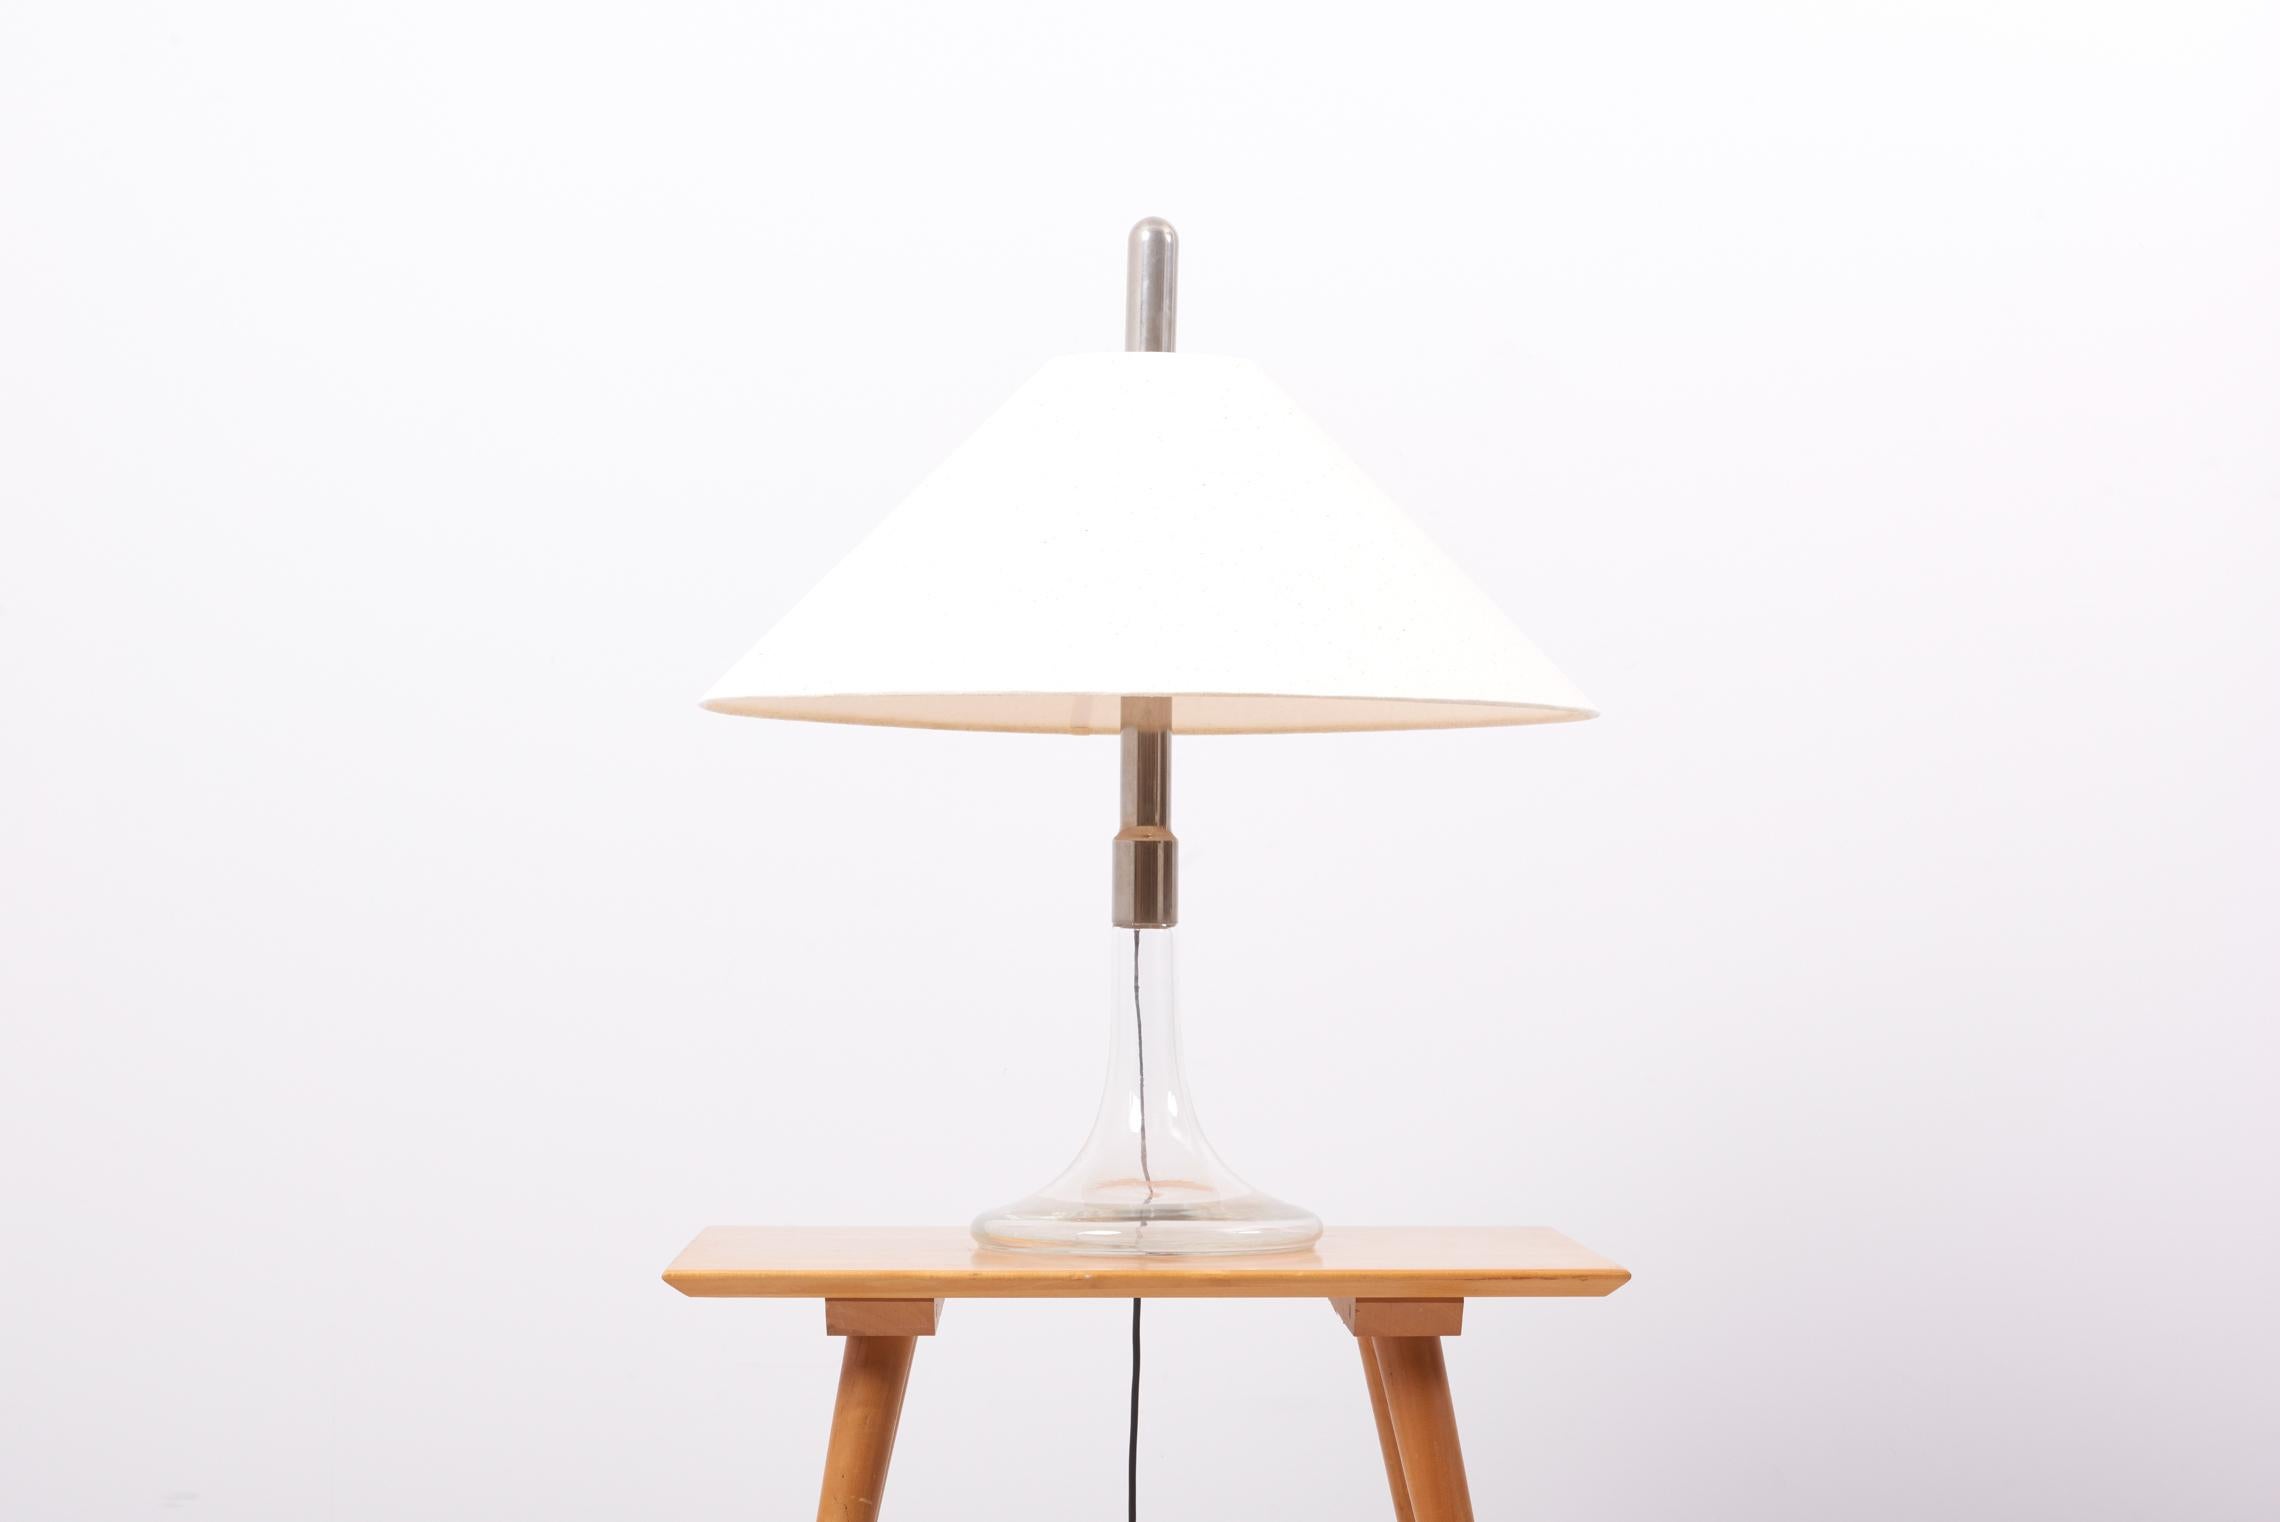 Tischleuchte aus den 1960er Jahren, Modell ML3, entworfen und hergestellt von Ingo Maurer in Deutschland.
Sockel aus Glas und Chrom. Einschließlich eines neuen Lampenschirms aus beiger Naturseide.

2 x E27-Fassungen.

Bitte beachten Sie: Die